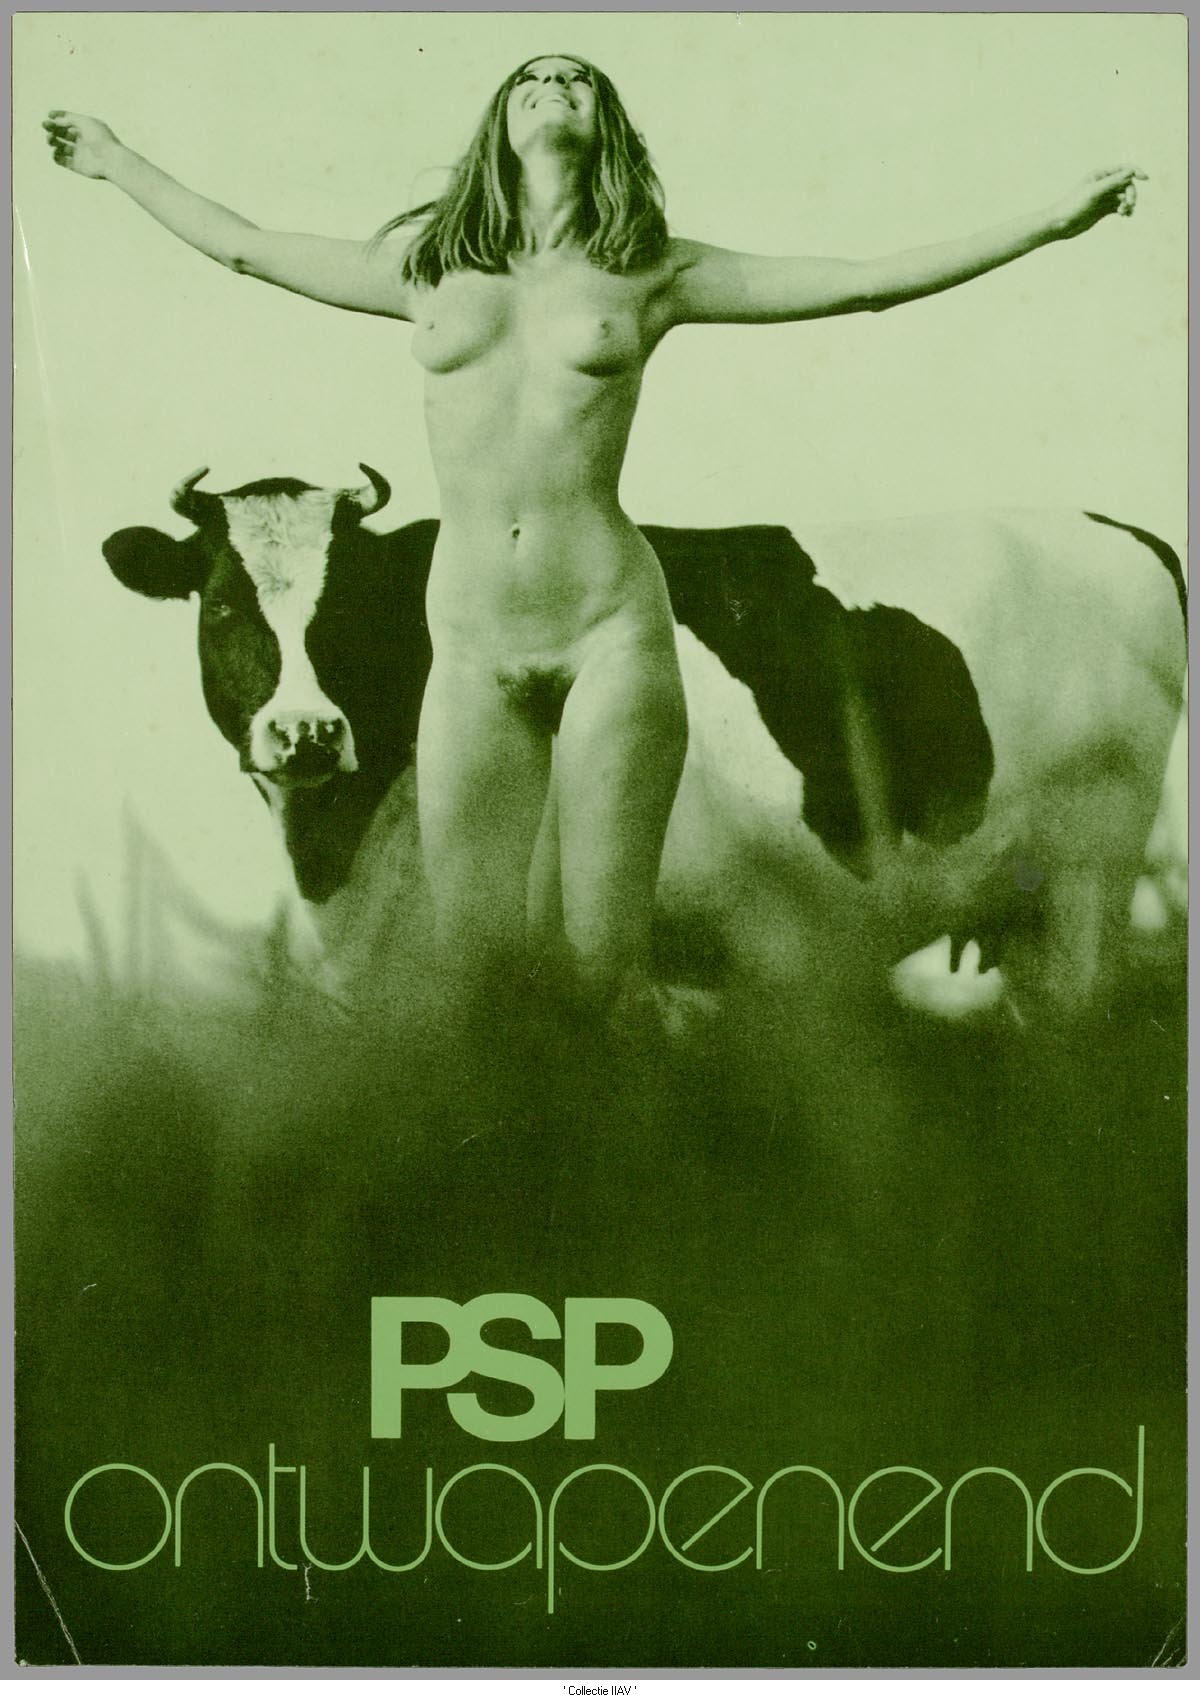 1200x1695, 261 Kb / Голая, корова, социалистической партия, Разоружение, плакат, Нидерланды